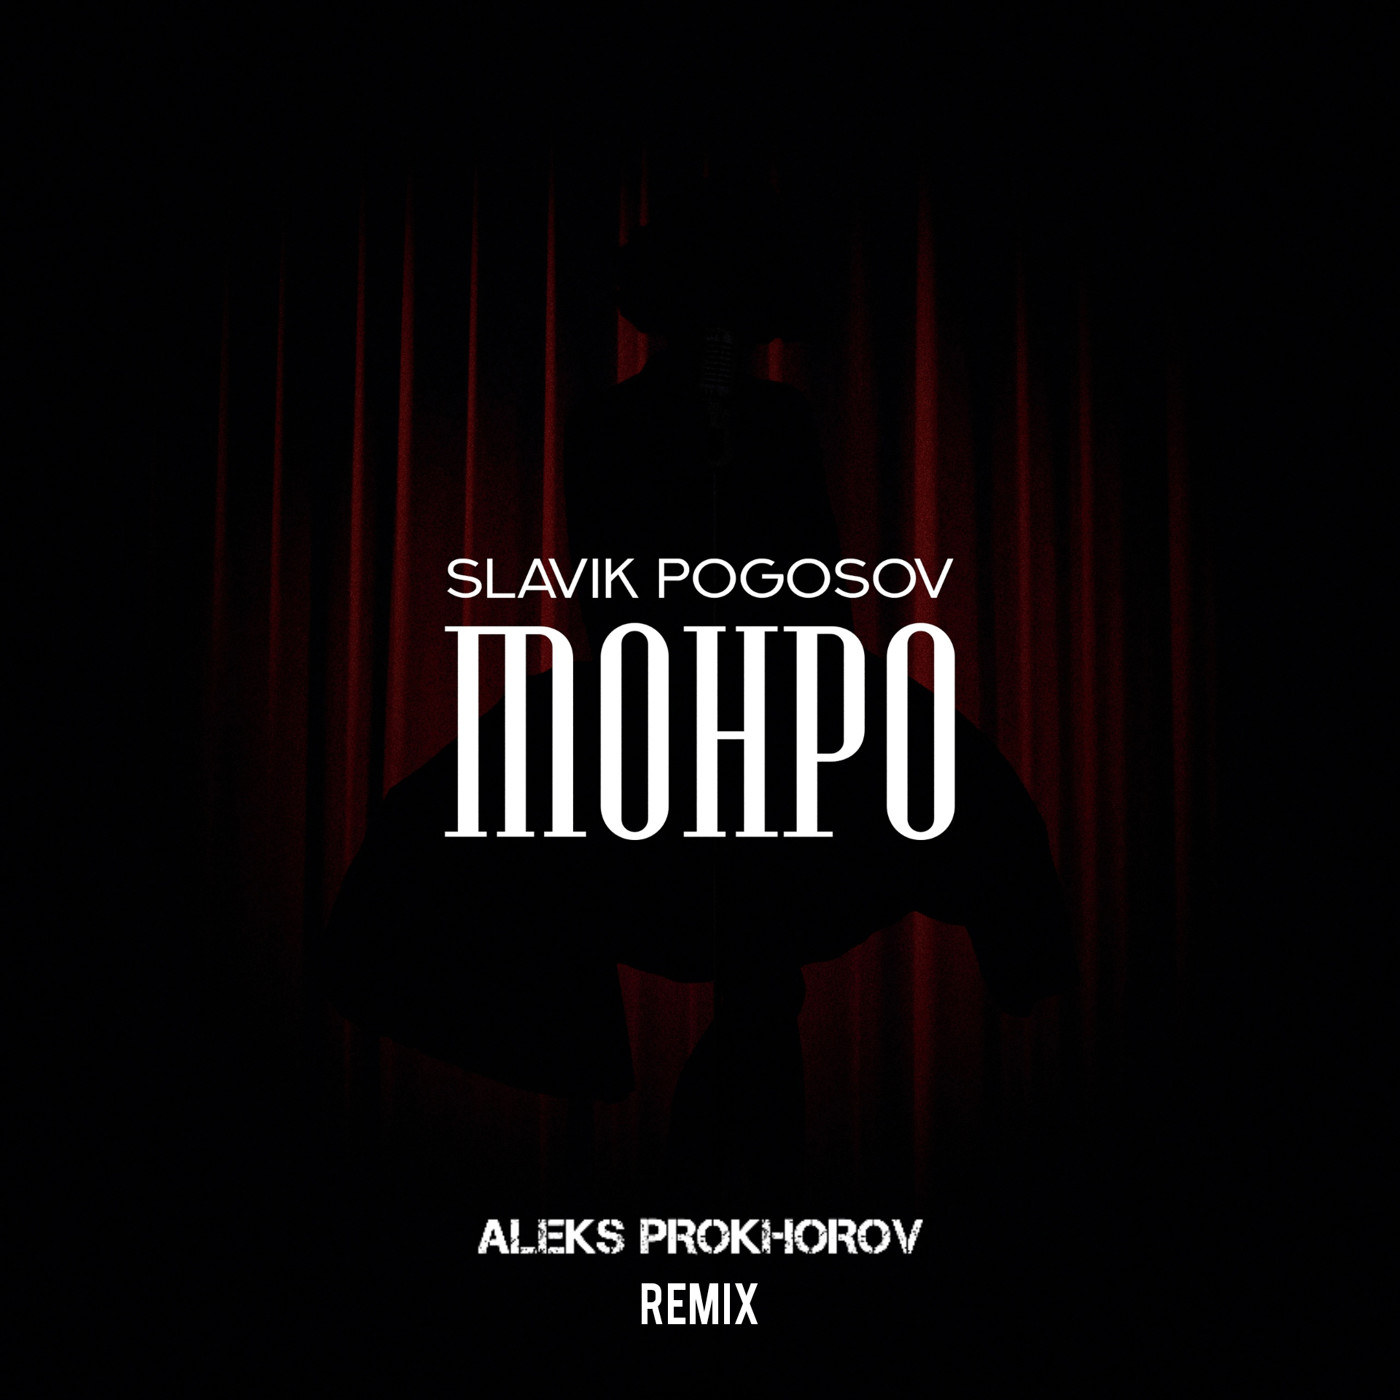 Slavik Pogosov - Монро (ALEKS PROKHOROV Remix)